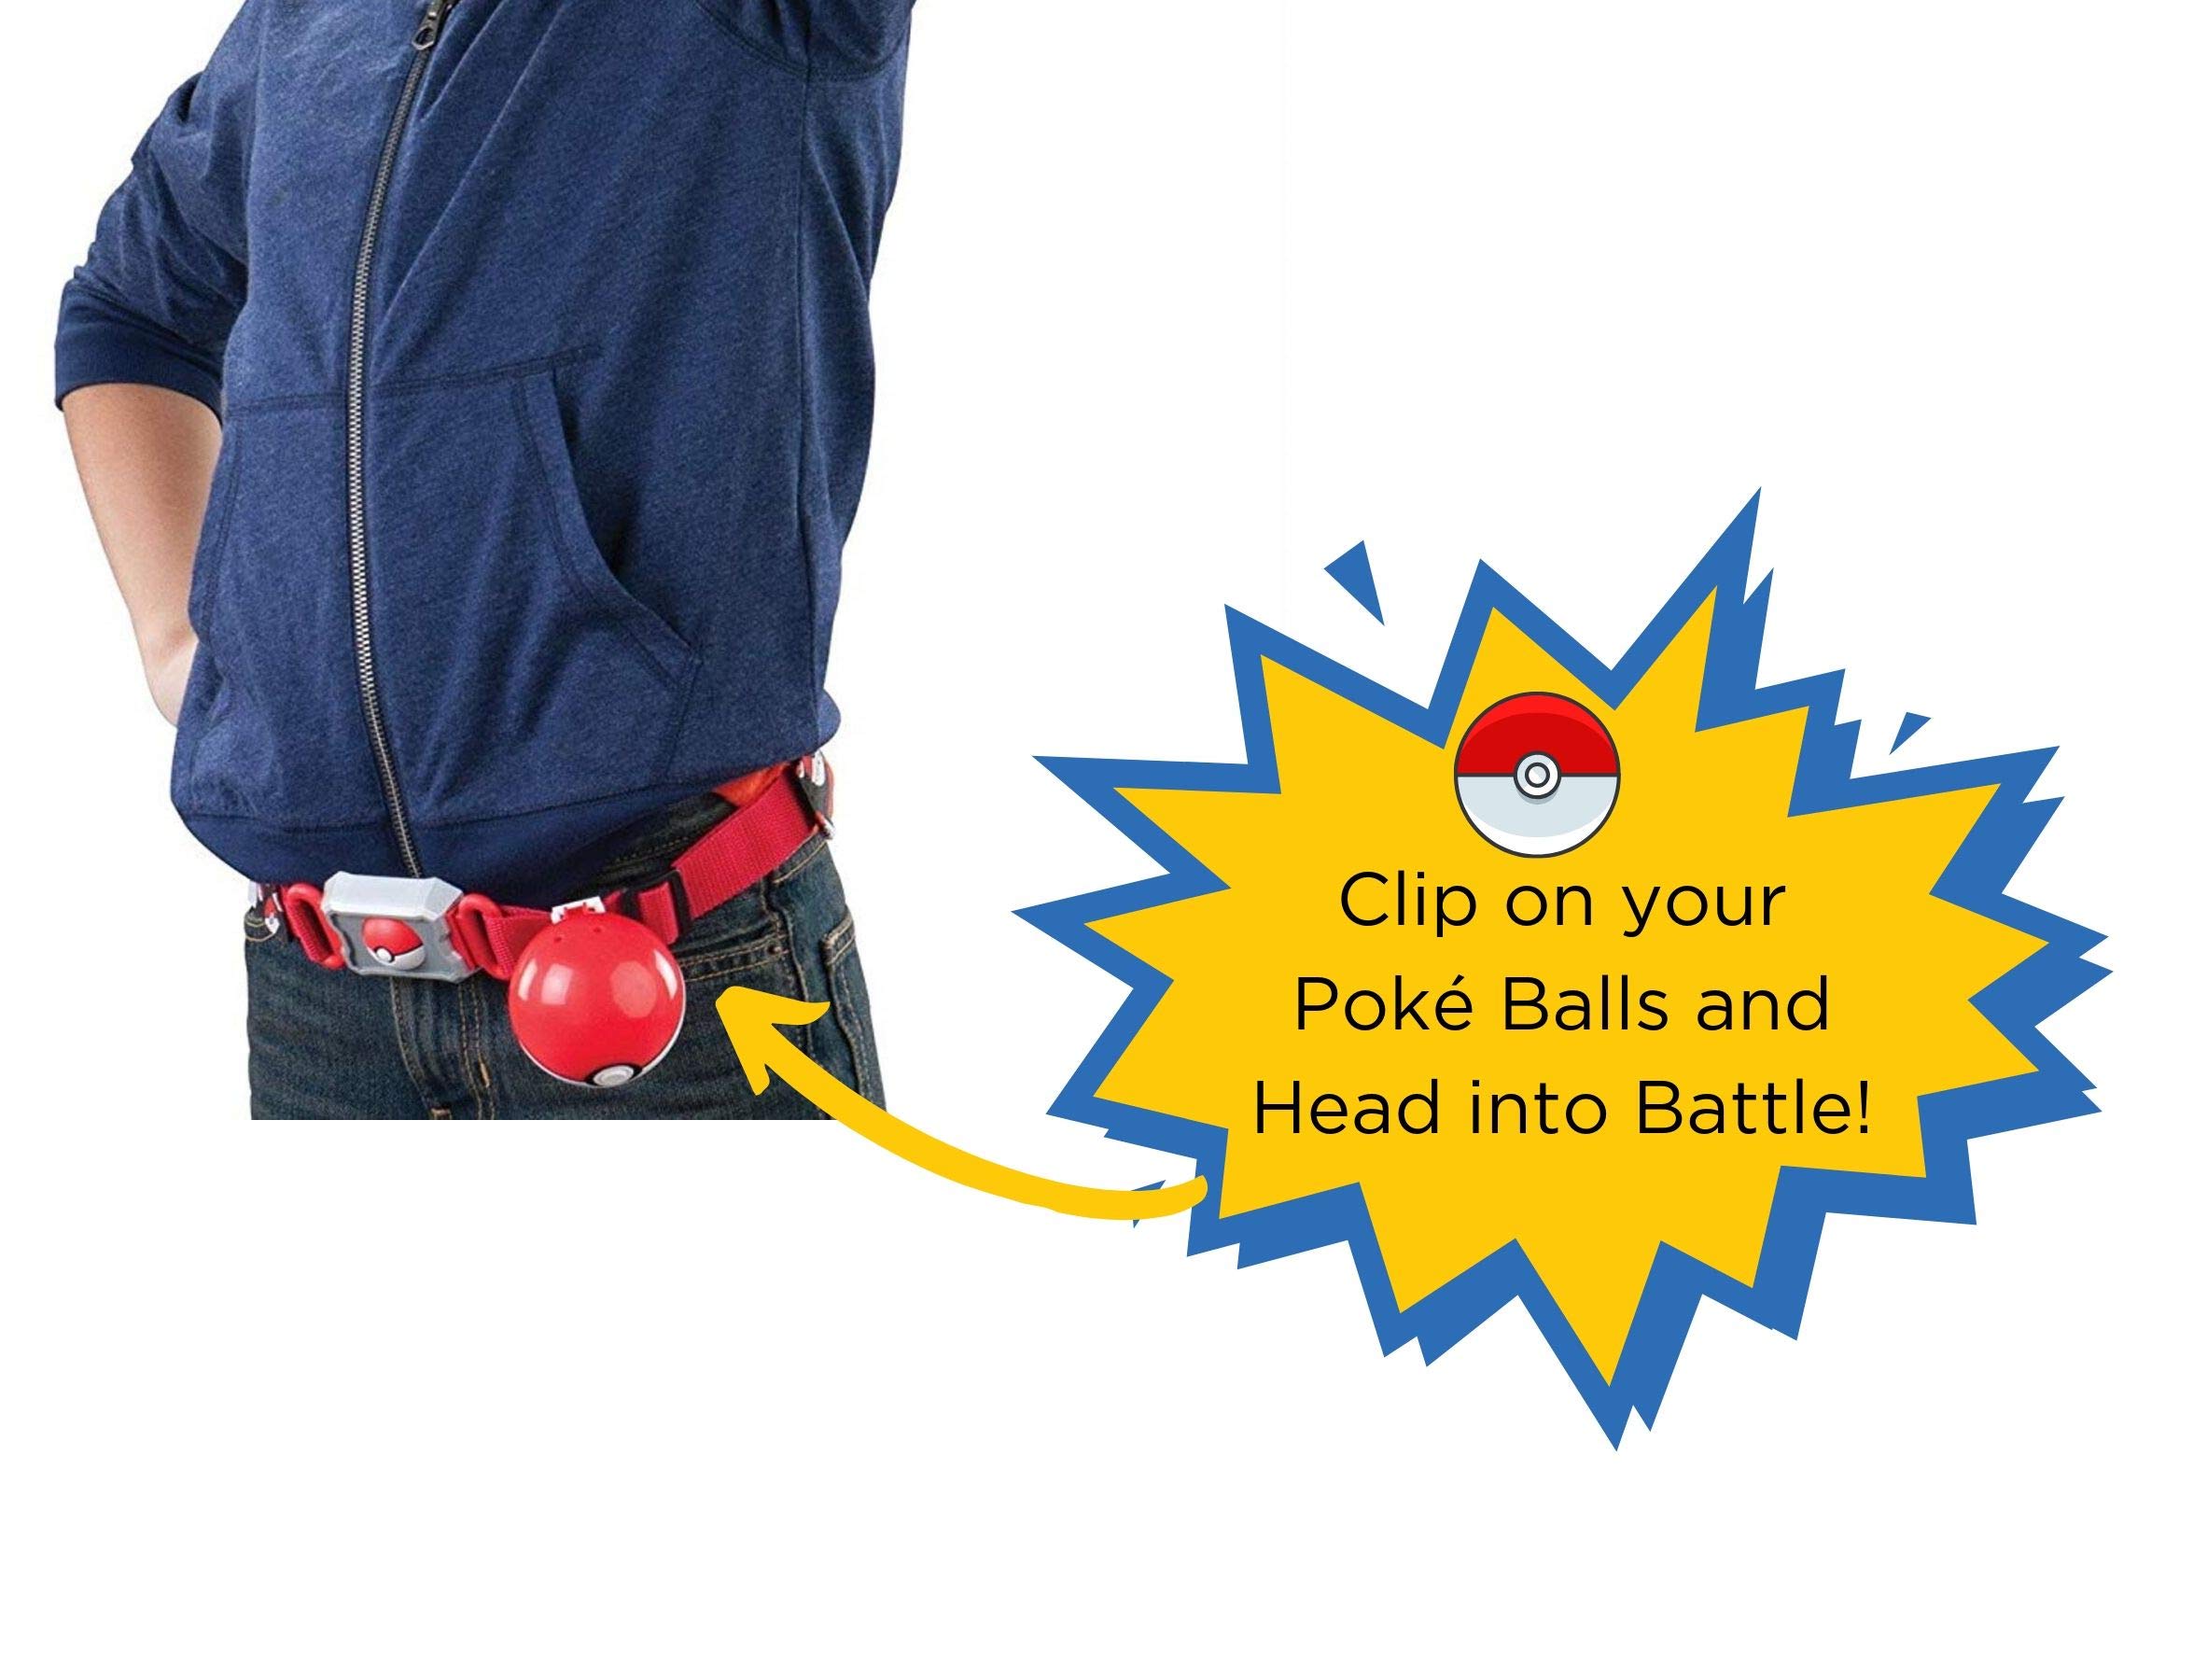 Pokémon Clip & Carry Poké Ball Belt